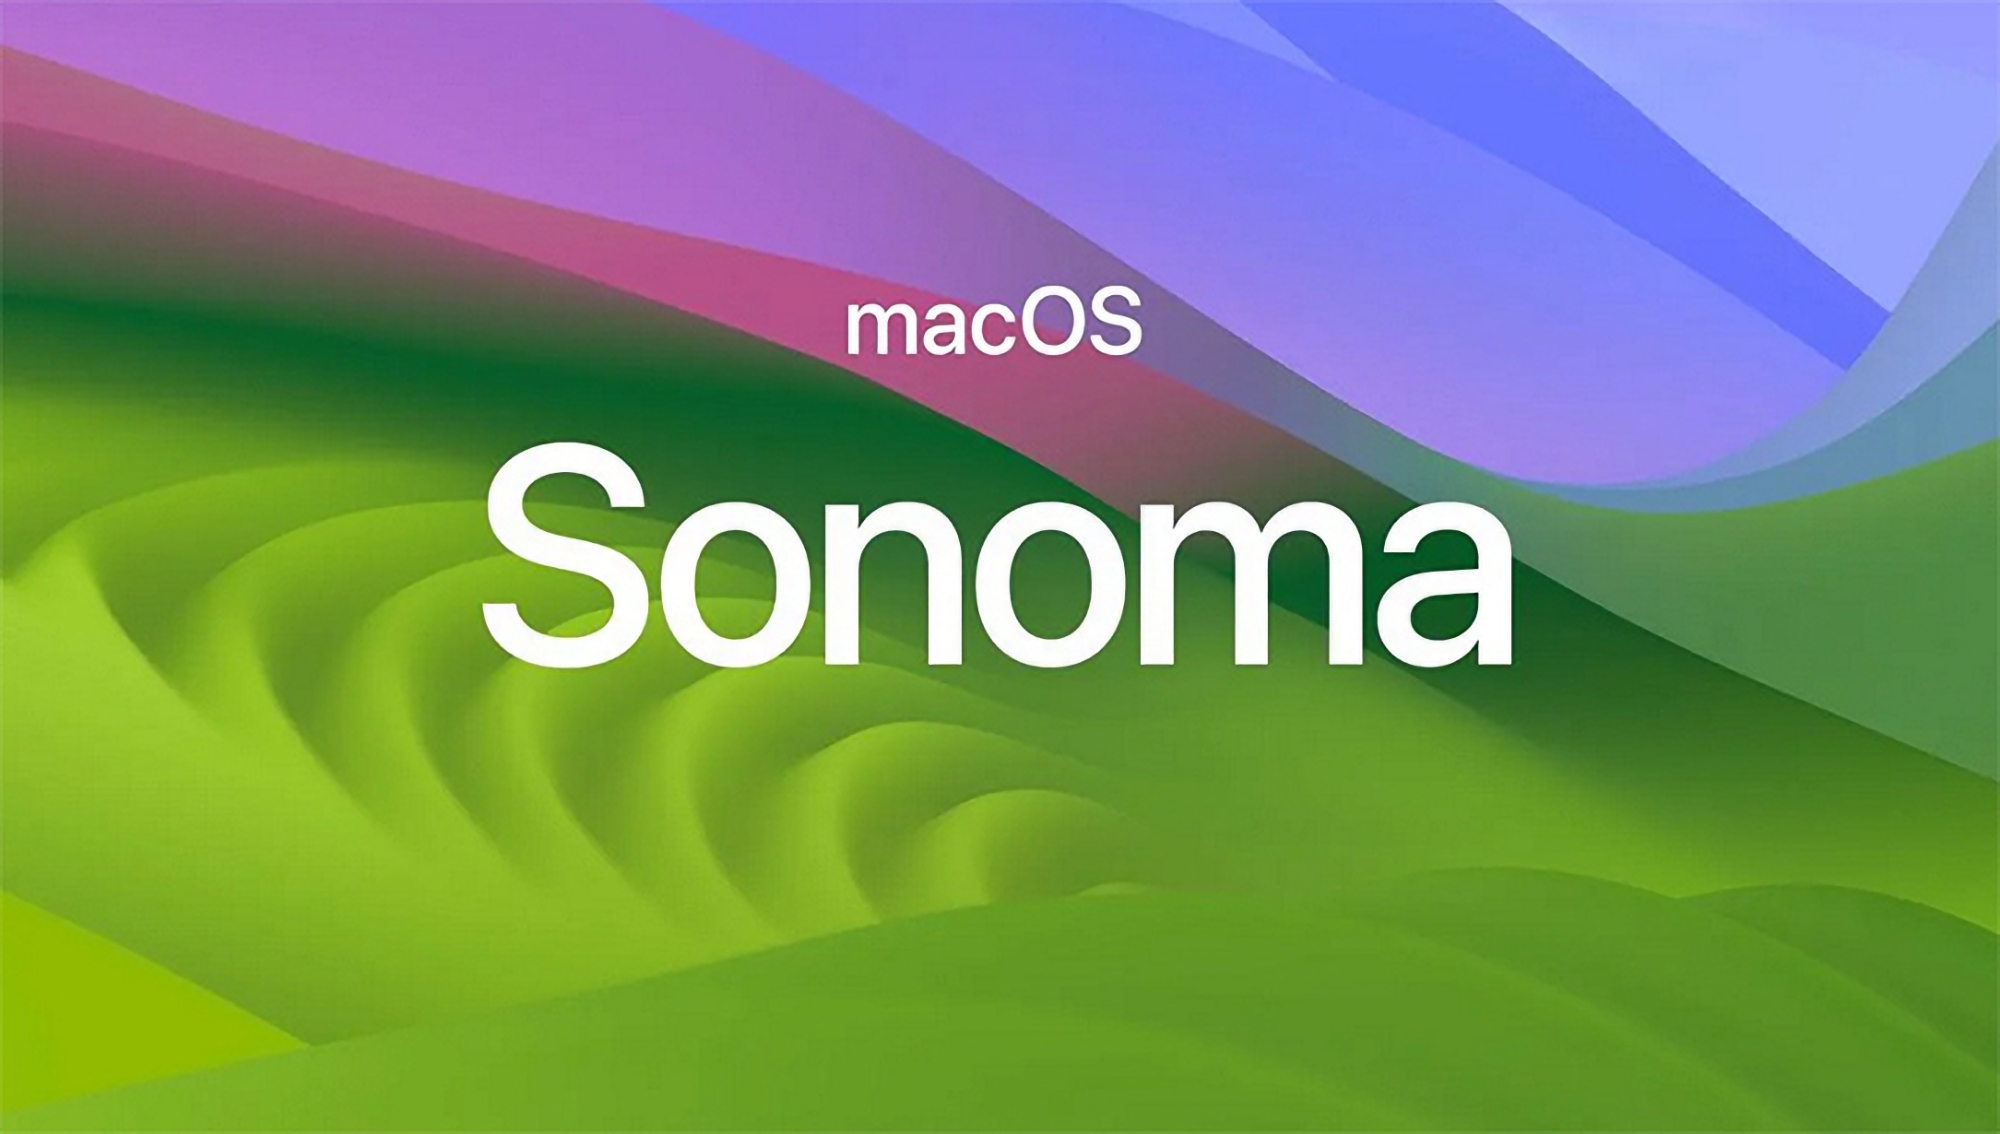 Po iOS 17.5 Beta 2 i iPadOS 17.5 Beta 2 wydana została druga beta systemu macOS Sonoma 14.5.